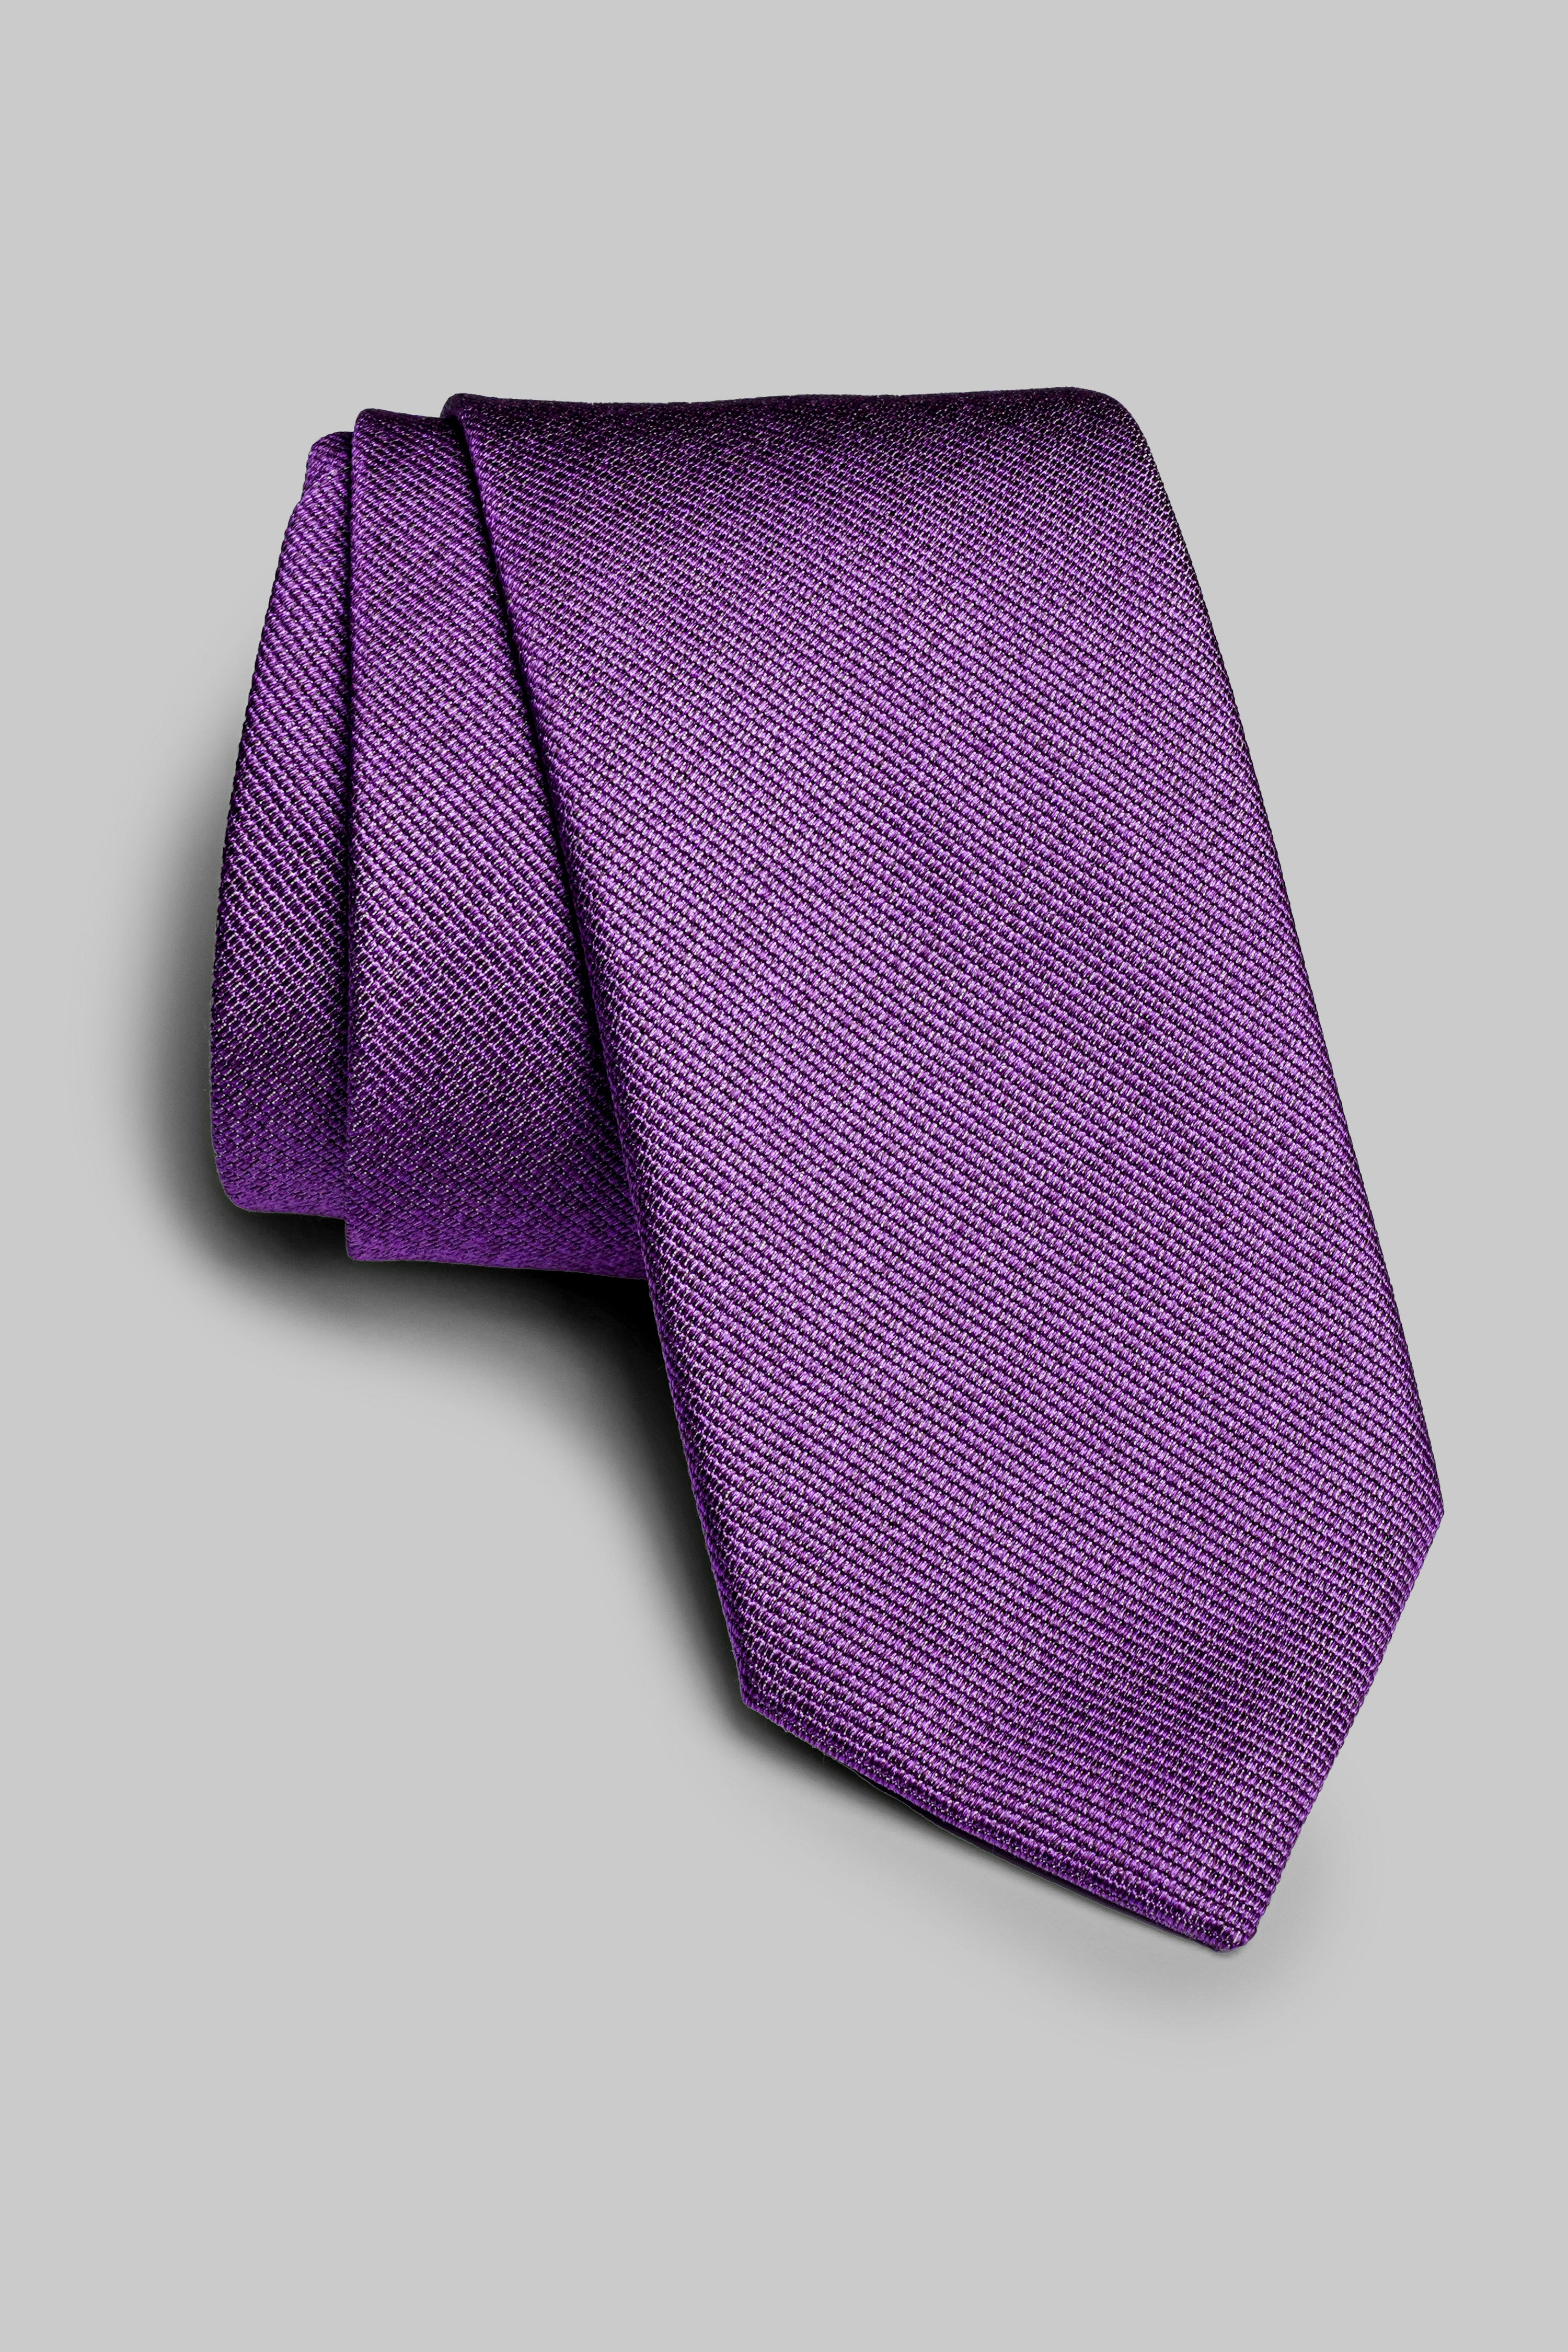 Vue alternative Bowman cravate tissée unie en violet